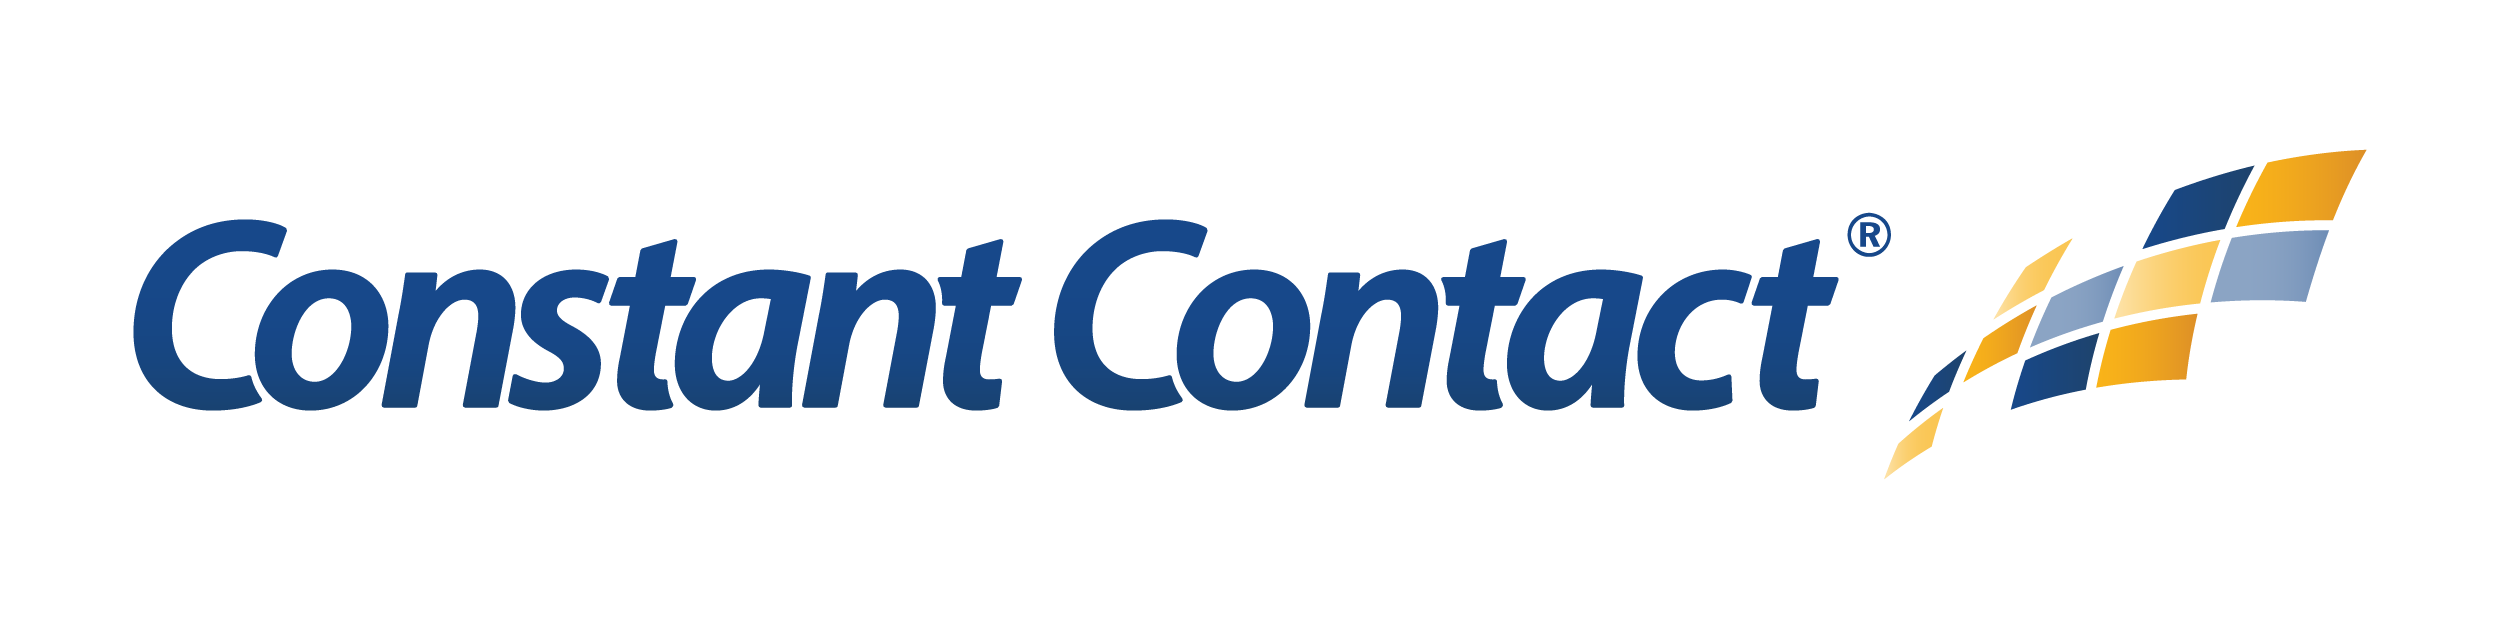 constant-contact-logo-horiz